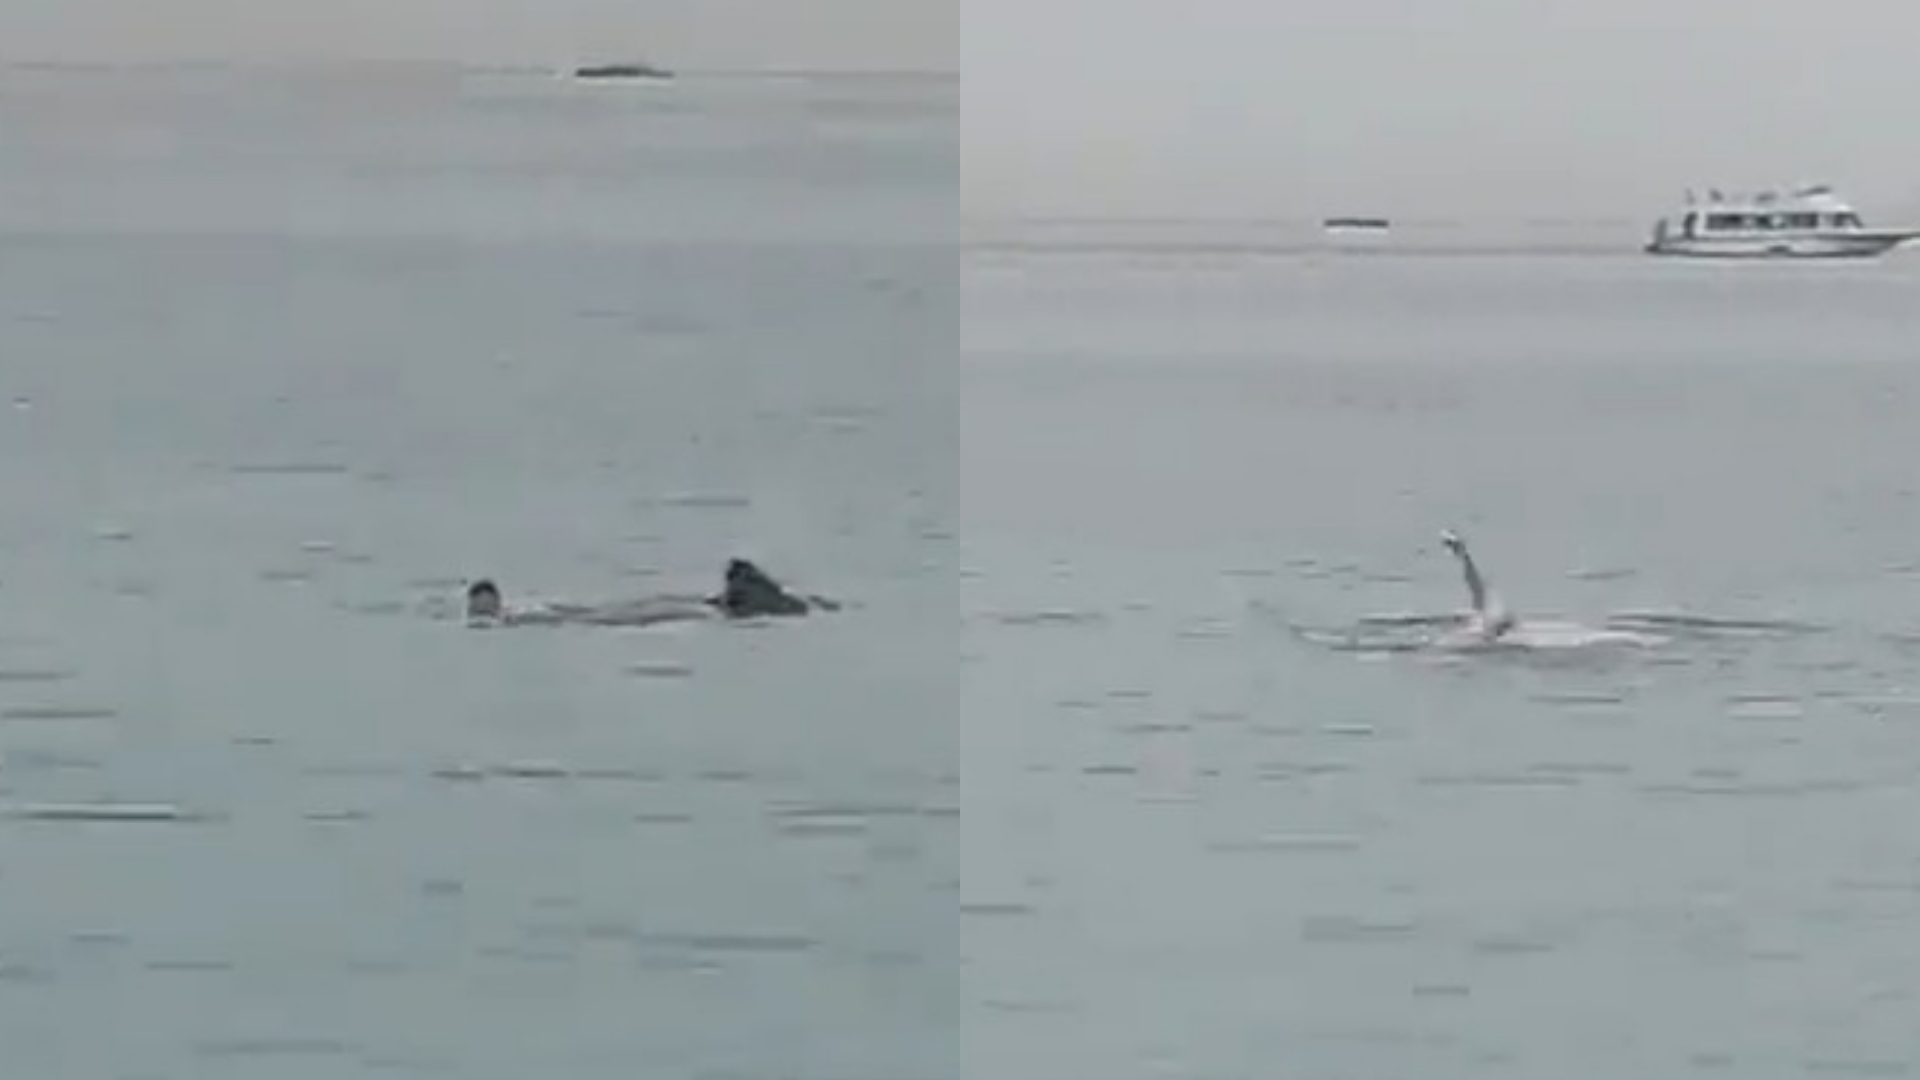 Vídeo flagra momento em que homem é devorado por tubarão no Egito; pai desabafa: “Tudo aconteceu em 20 segundos”